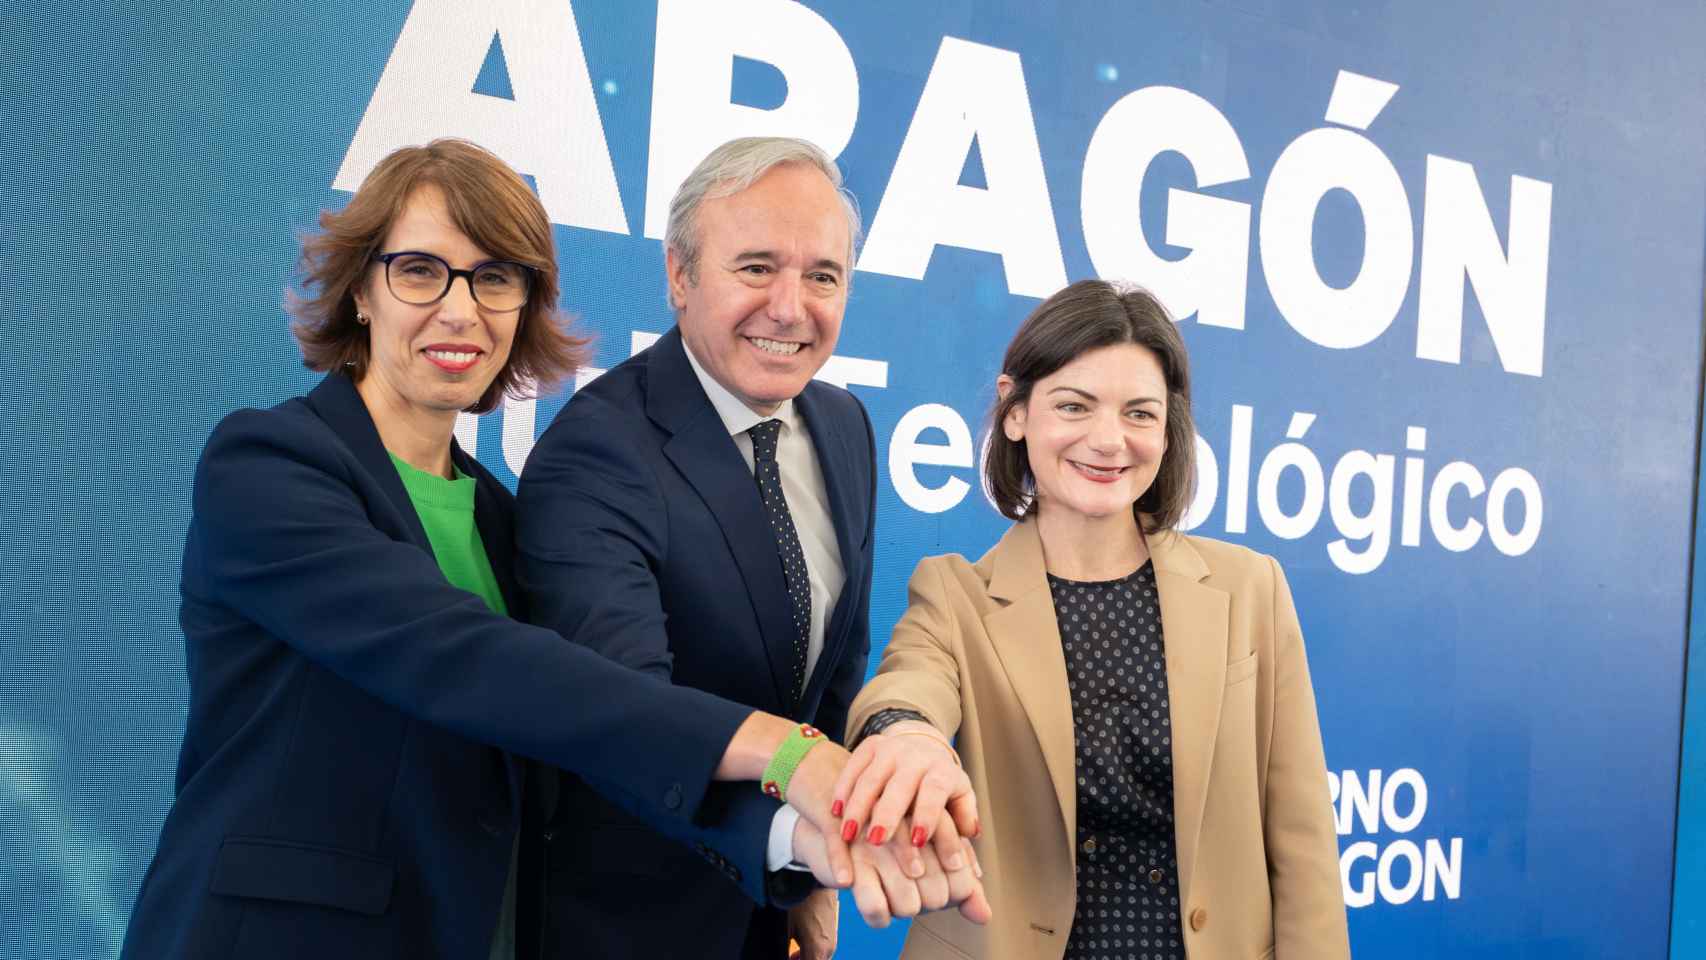 De izquierda a derecha: Suzana Curic, directora general de AWS para Iberia; Jorge Azcón, presidente de Aragón; Niamh Gallagher, directora de Política Pública de Infraestructuras de AWS.